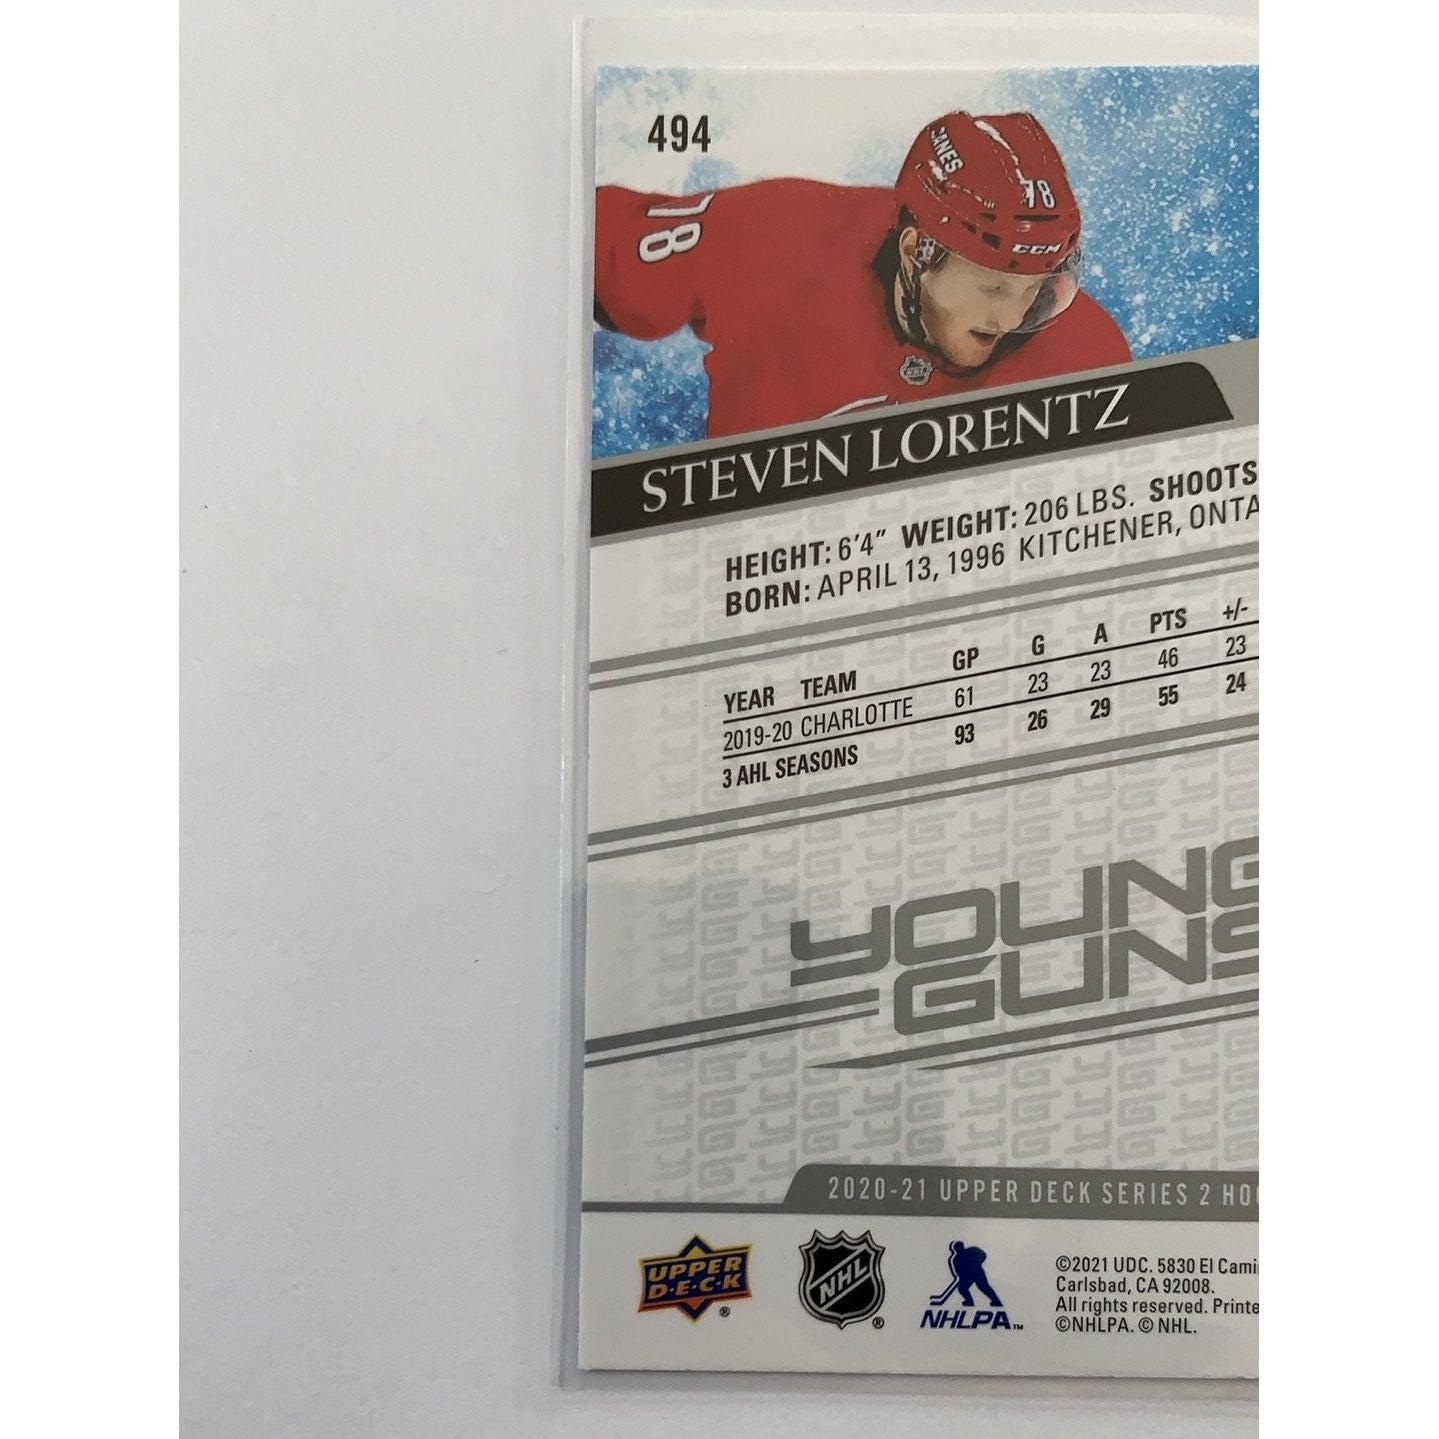  2020-21 Upper Deck Series 2 Steven Lorentz Young Guns  Local Legends Cards & Collectibles